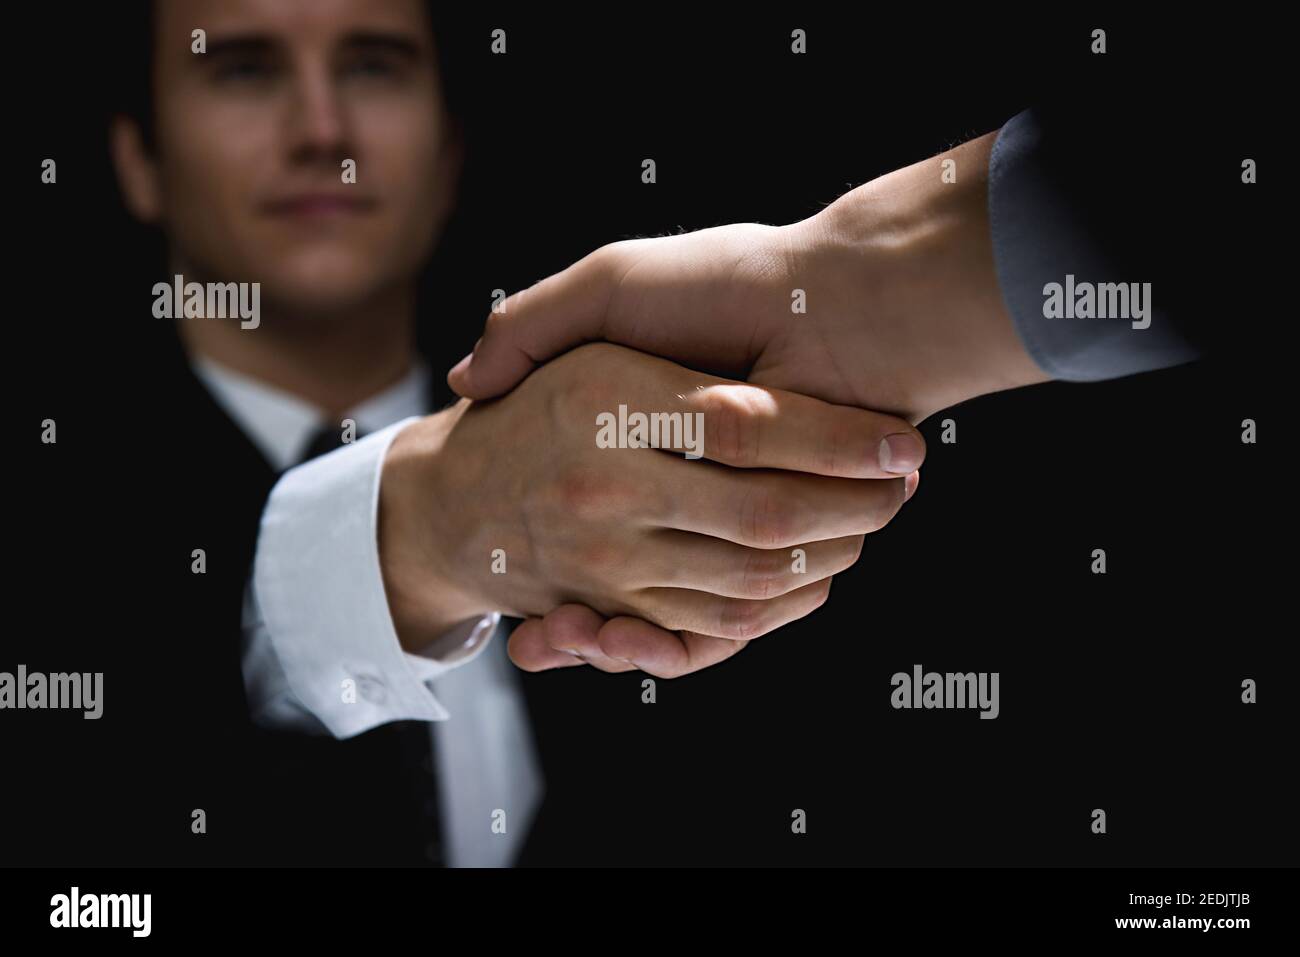 Business partners making handshake in dark shadow Stock Photo